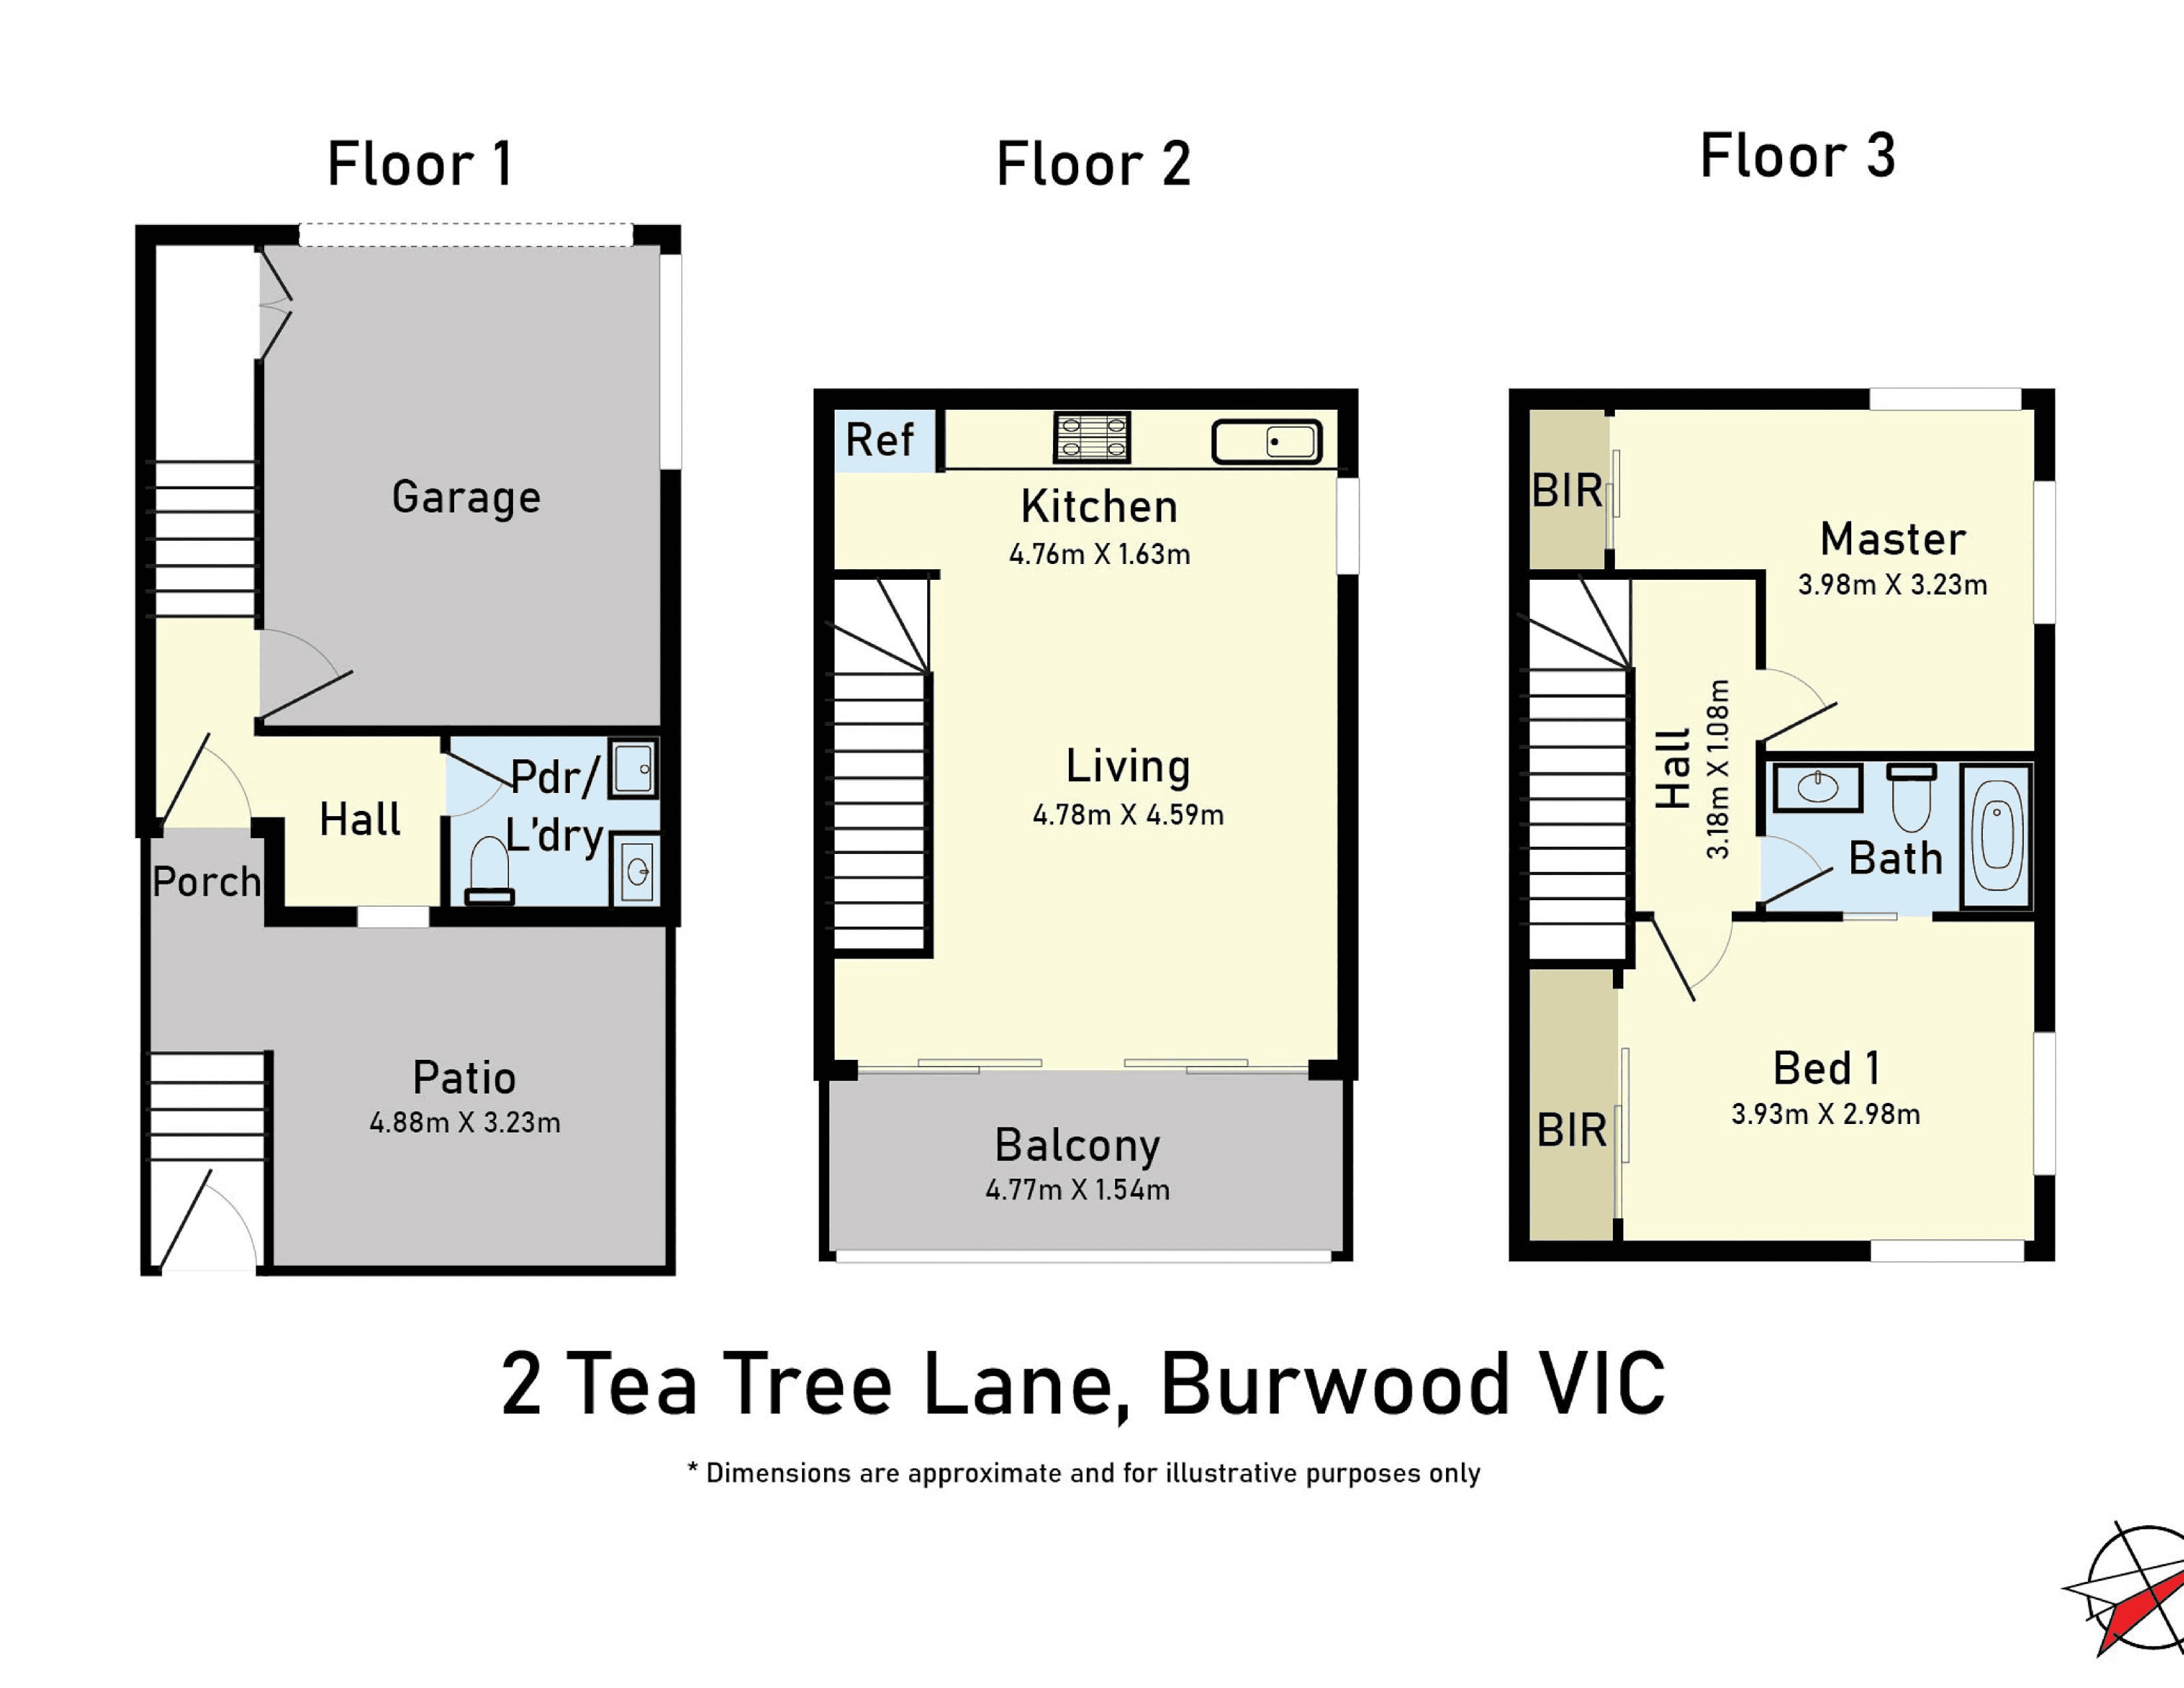 2 Tea Tree Lane, Burwood, VIC 3125